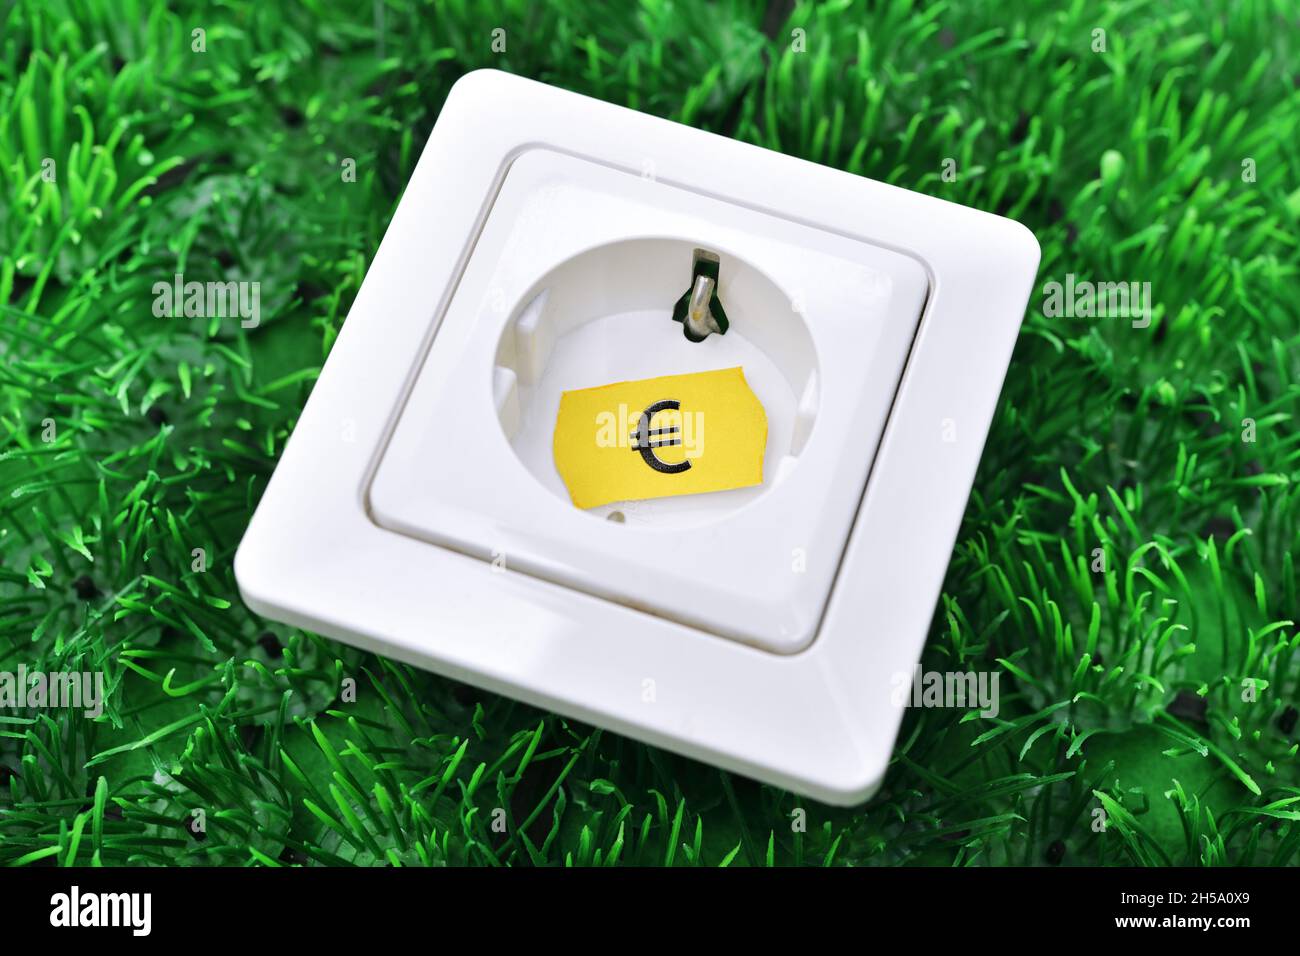 Steckdose mit Preisetichett auf Gras, Symbolfoto für steigende Stromkosten Foto Stock